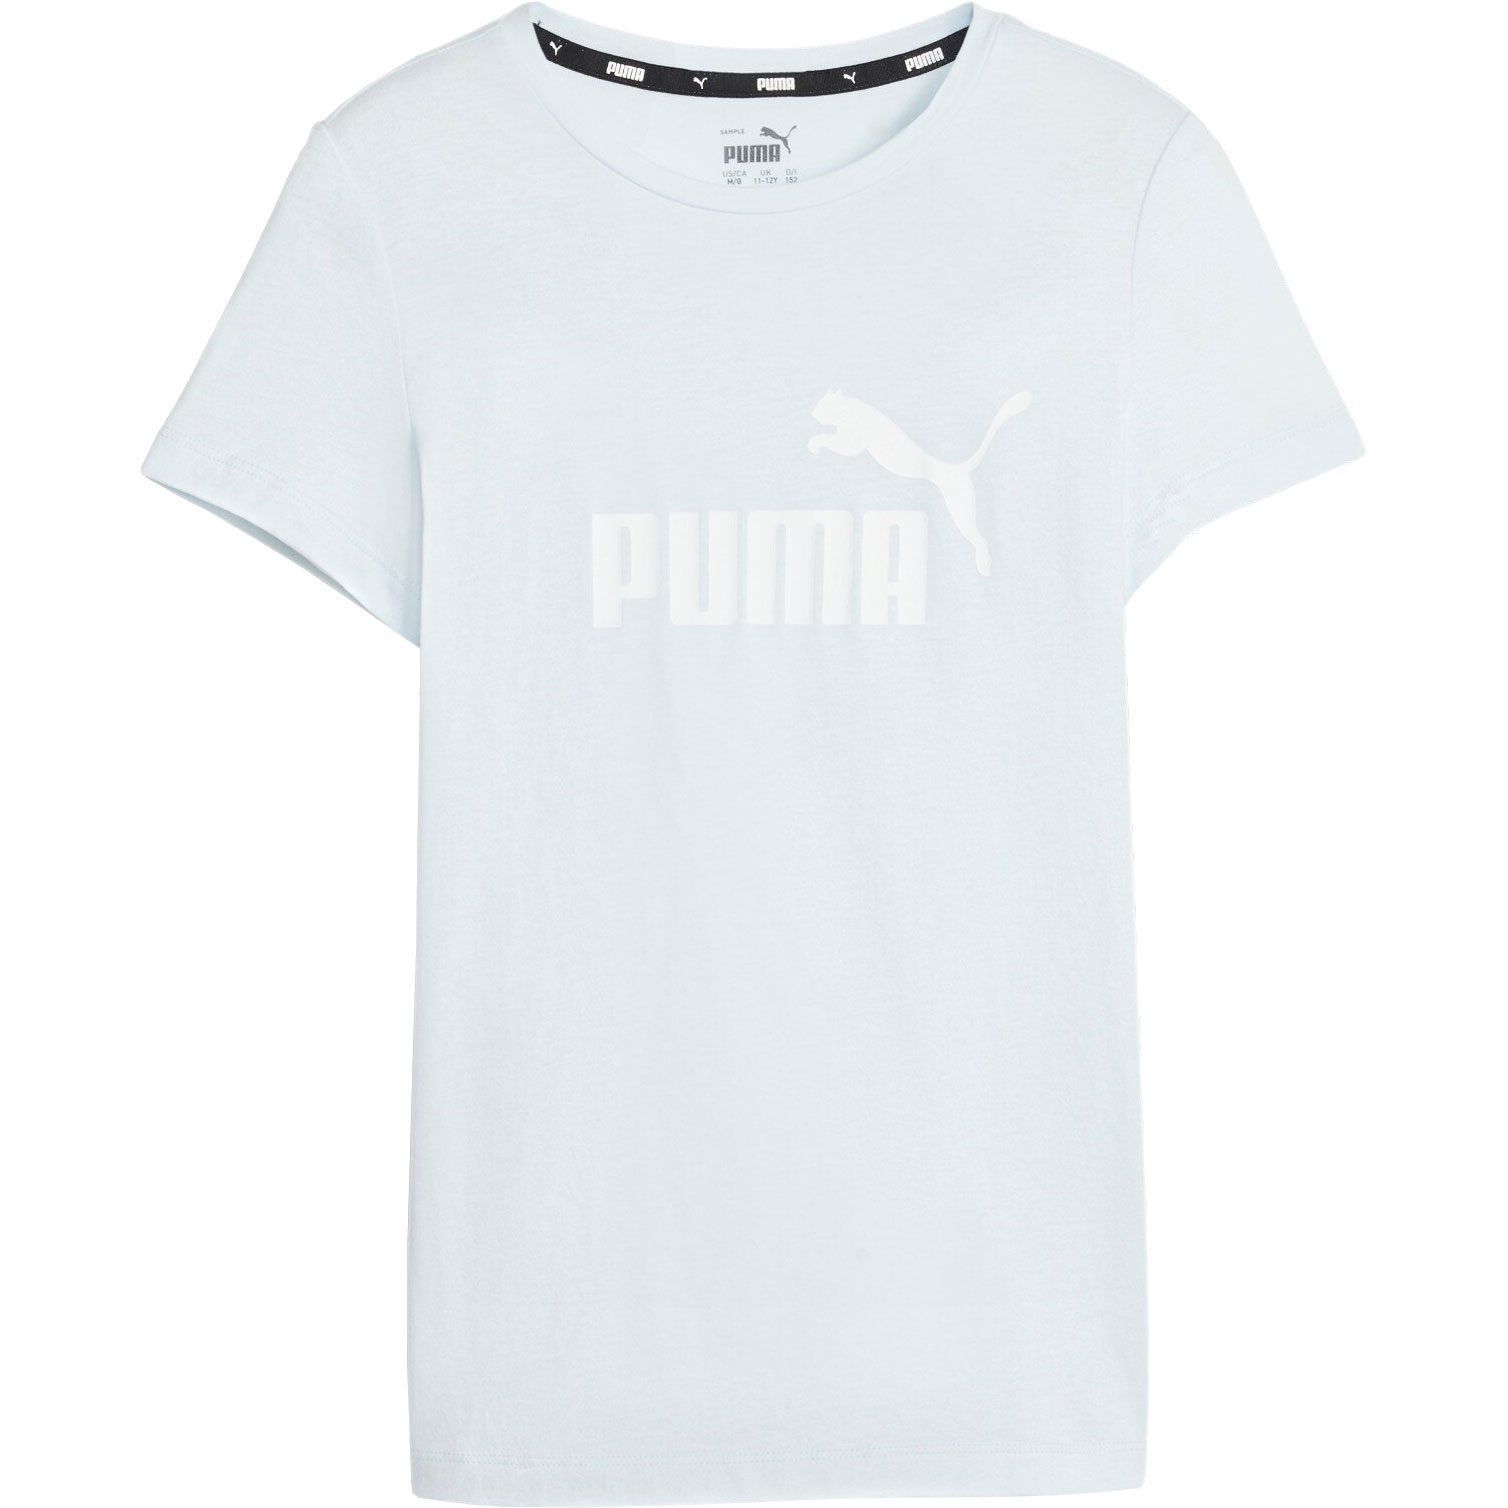 Sport Bittl Esentails kaufen Mädchen Puma icy im - T-Shirt Logo Shop blue